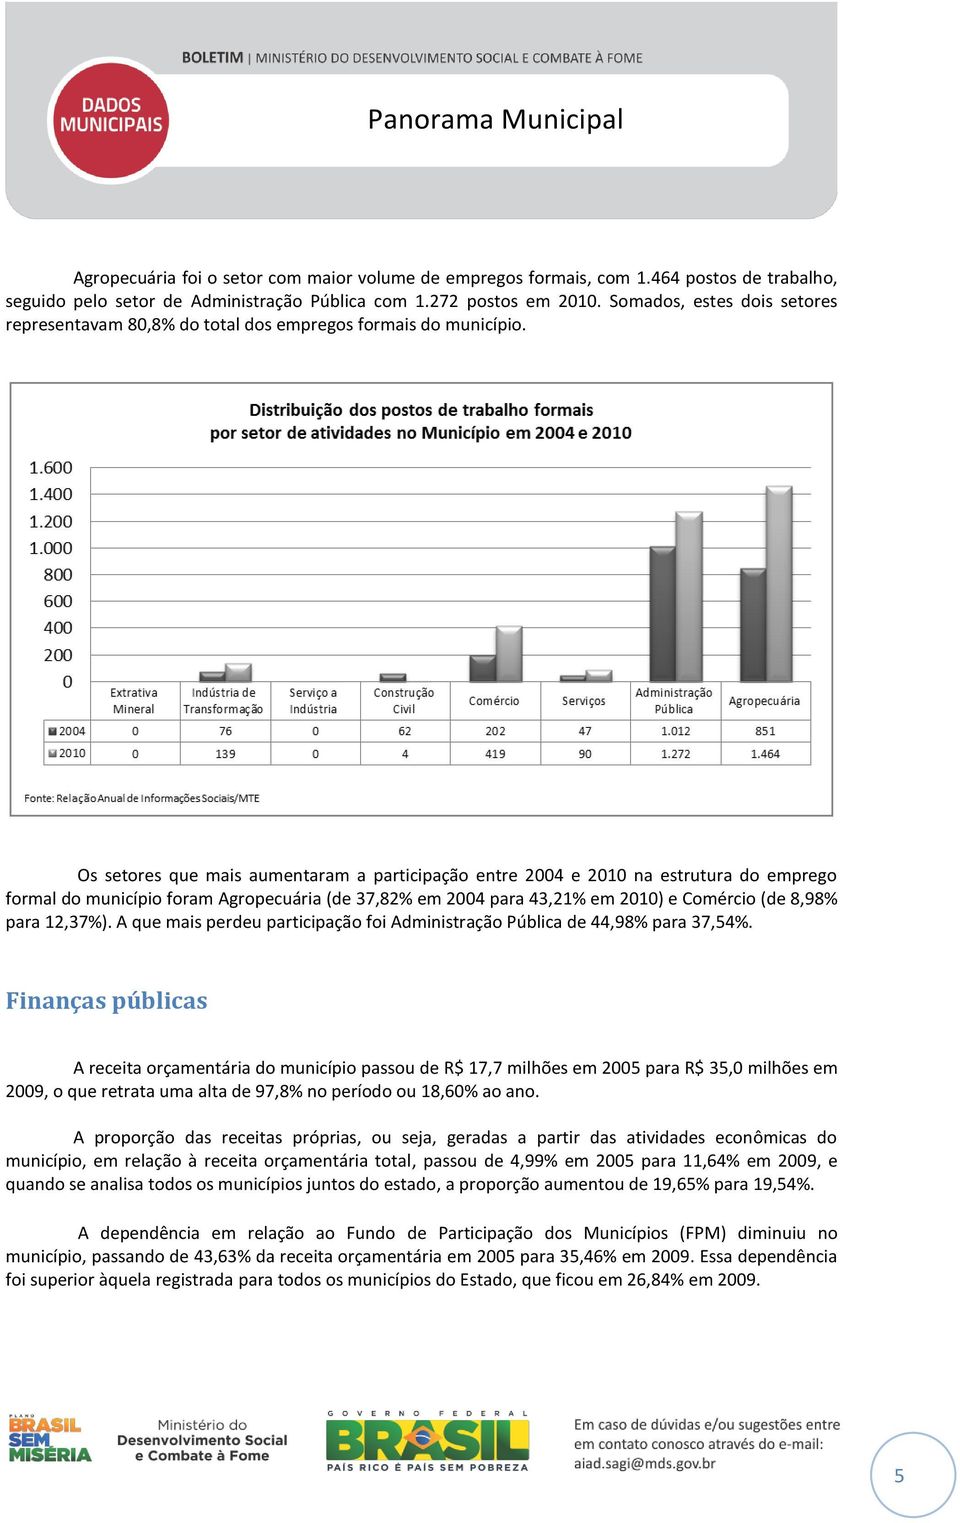 Os setores que mais aumentaram a participação entre 2004 e 2010 na estrutura do emprego formal do município foram Agropecuária (de 37,82% em 2004 para 43,21% em 2010) e Comércio (de 8,98% para